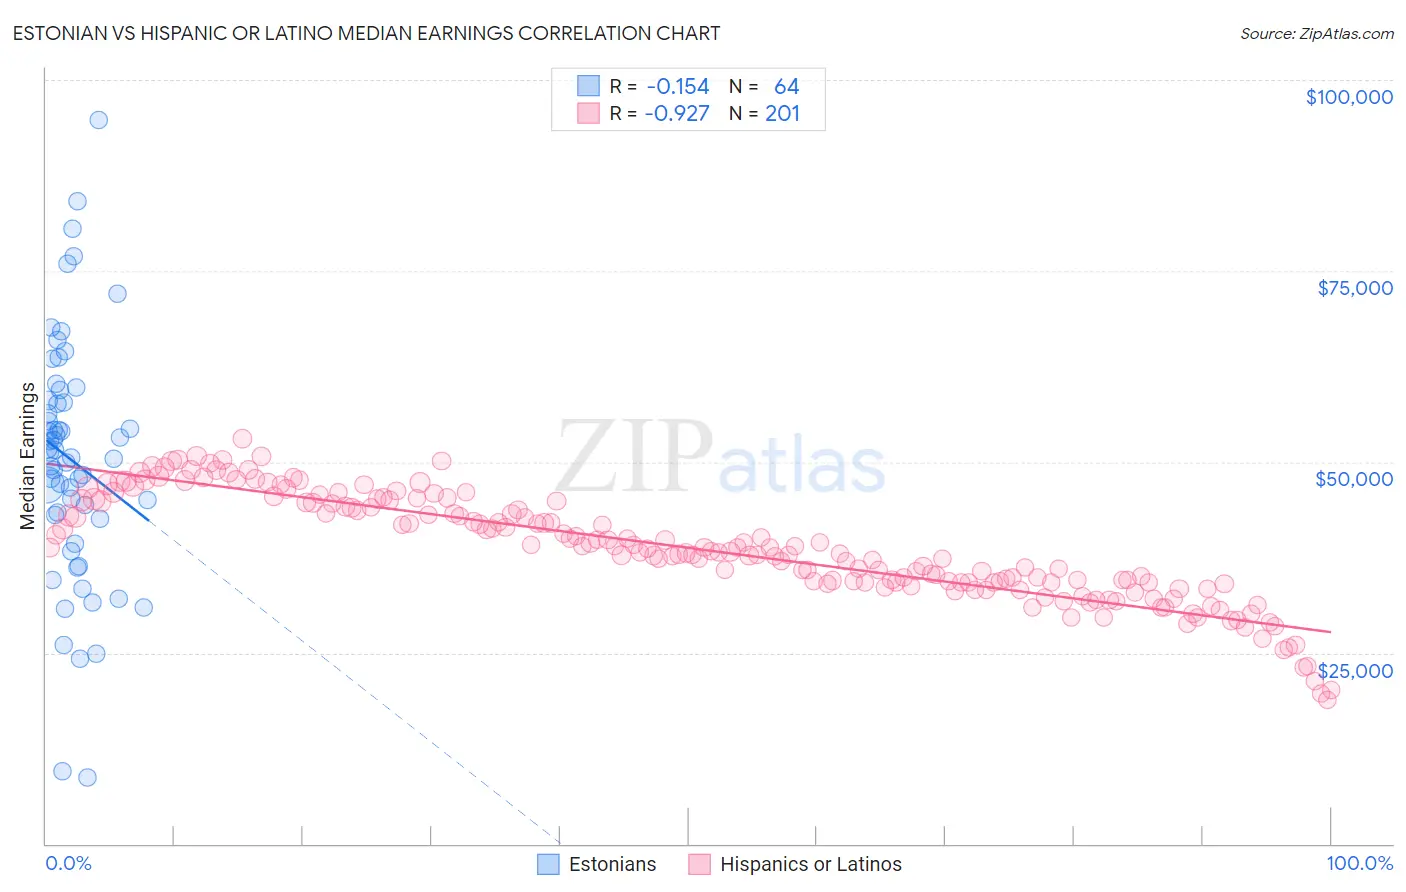 Estonian vs Hispanic or Latino Median Earnings